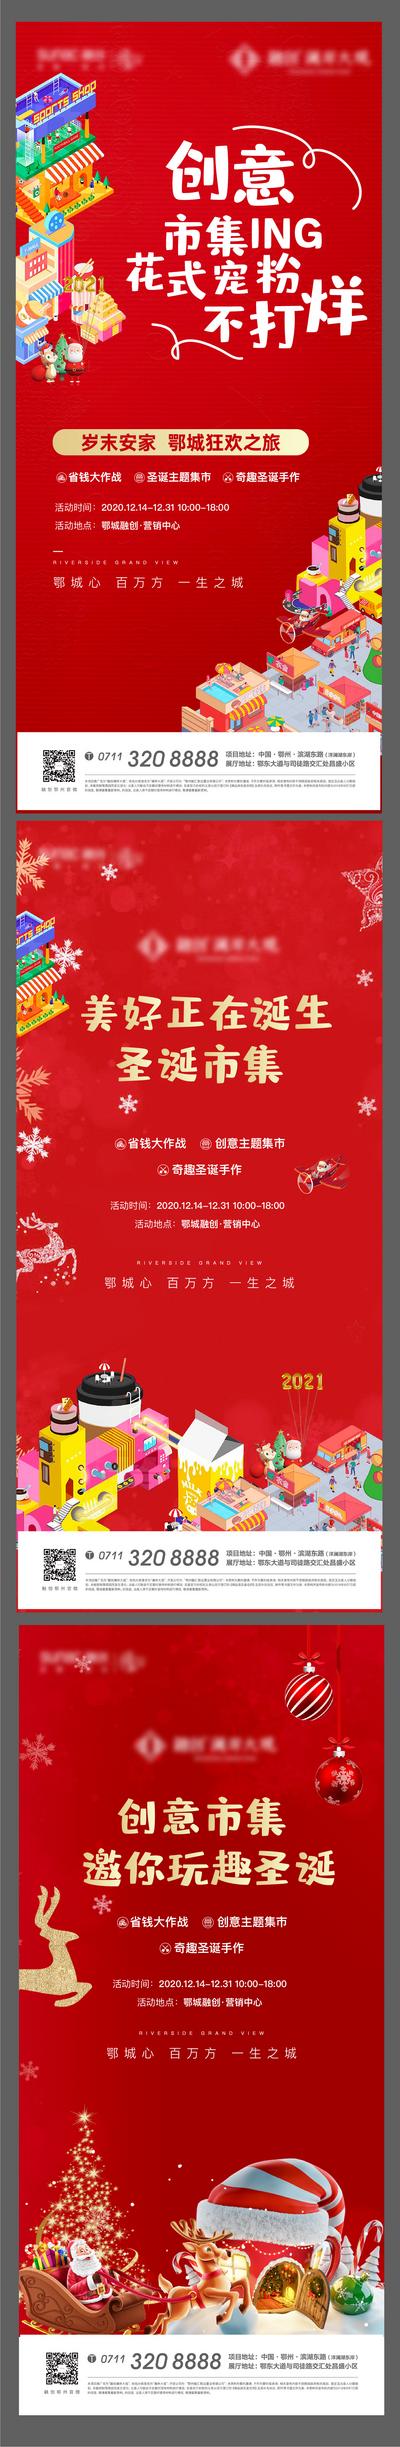 南门网 海报 公历节日 圣诞节 地产 市集 活动 卡通 店铺